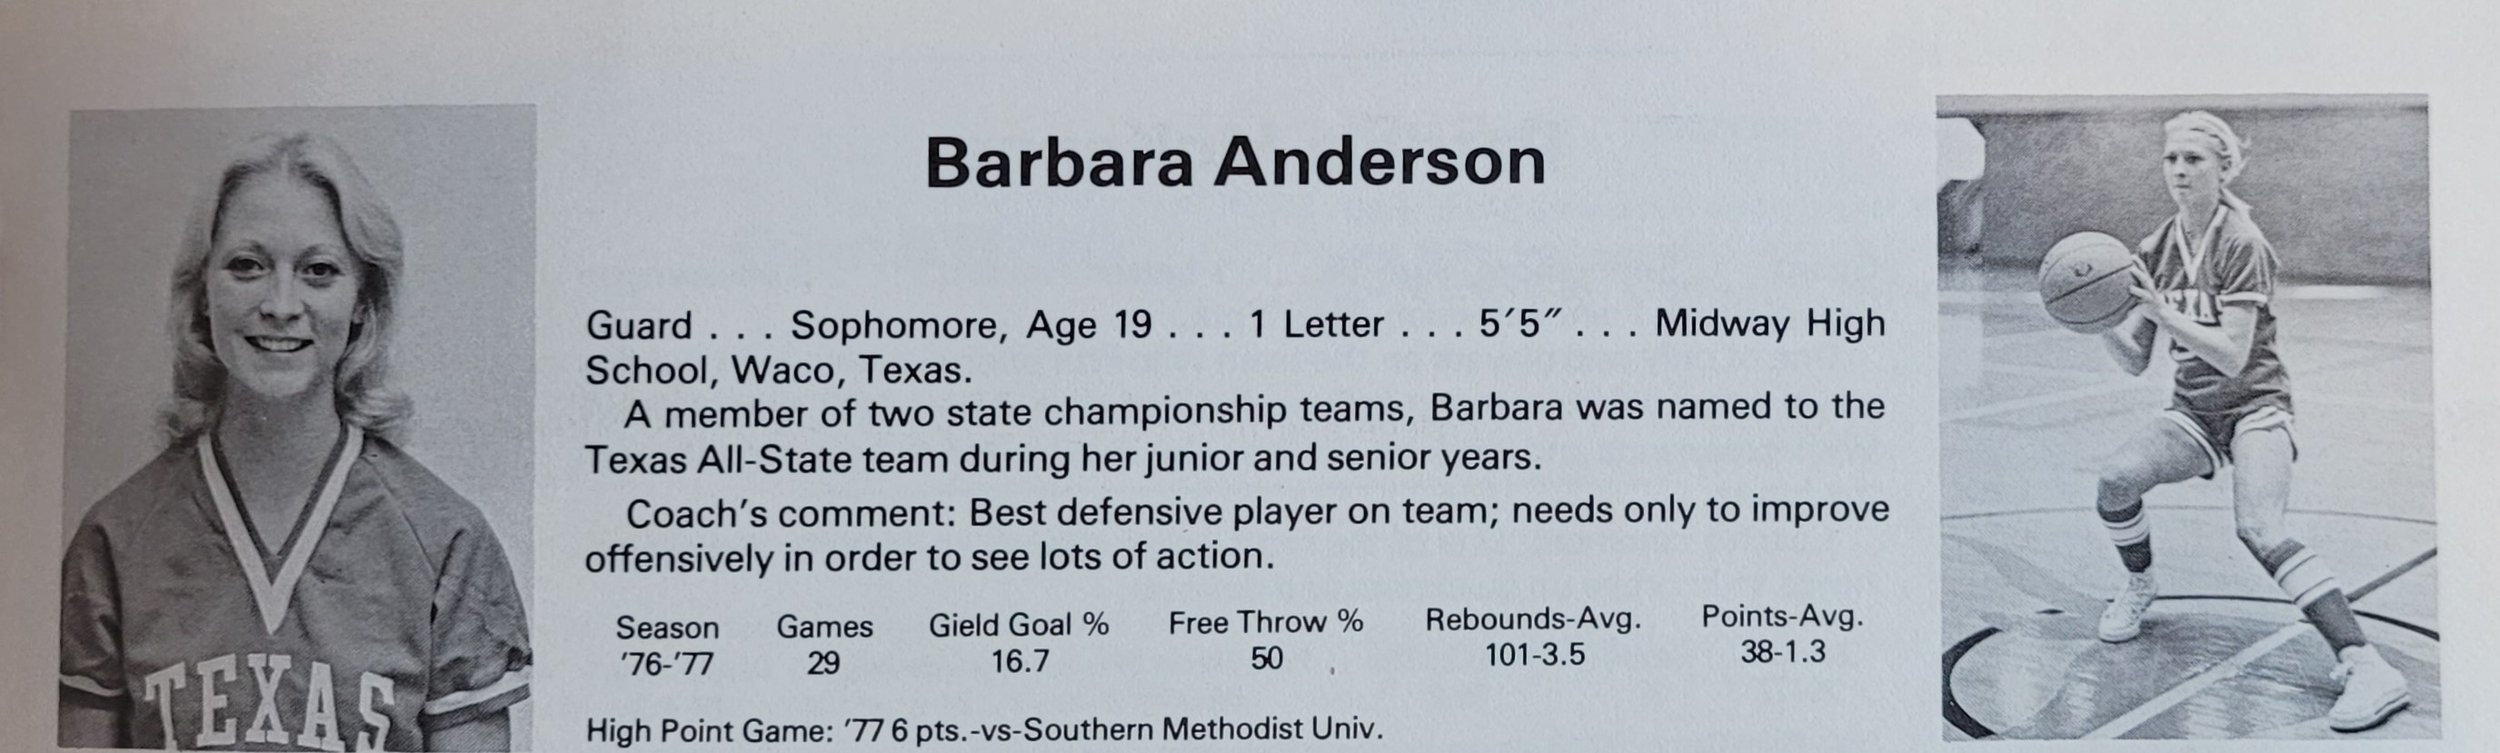 Barbara Anderson (Copy)